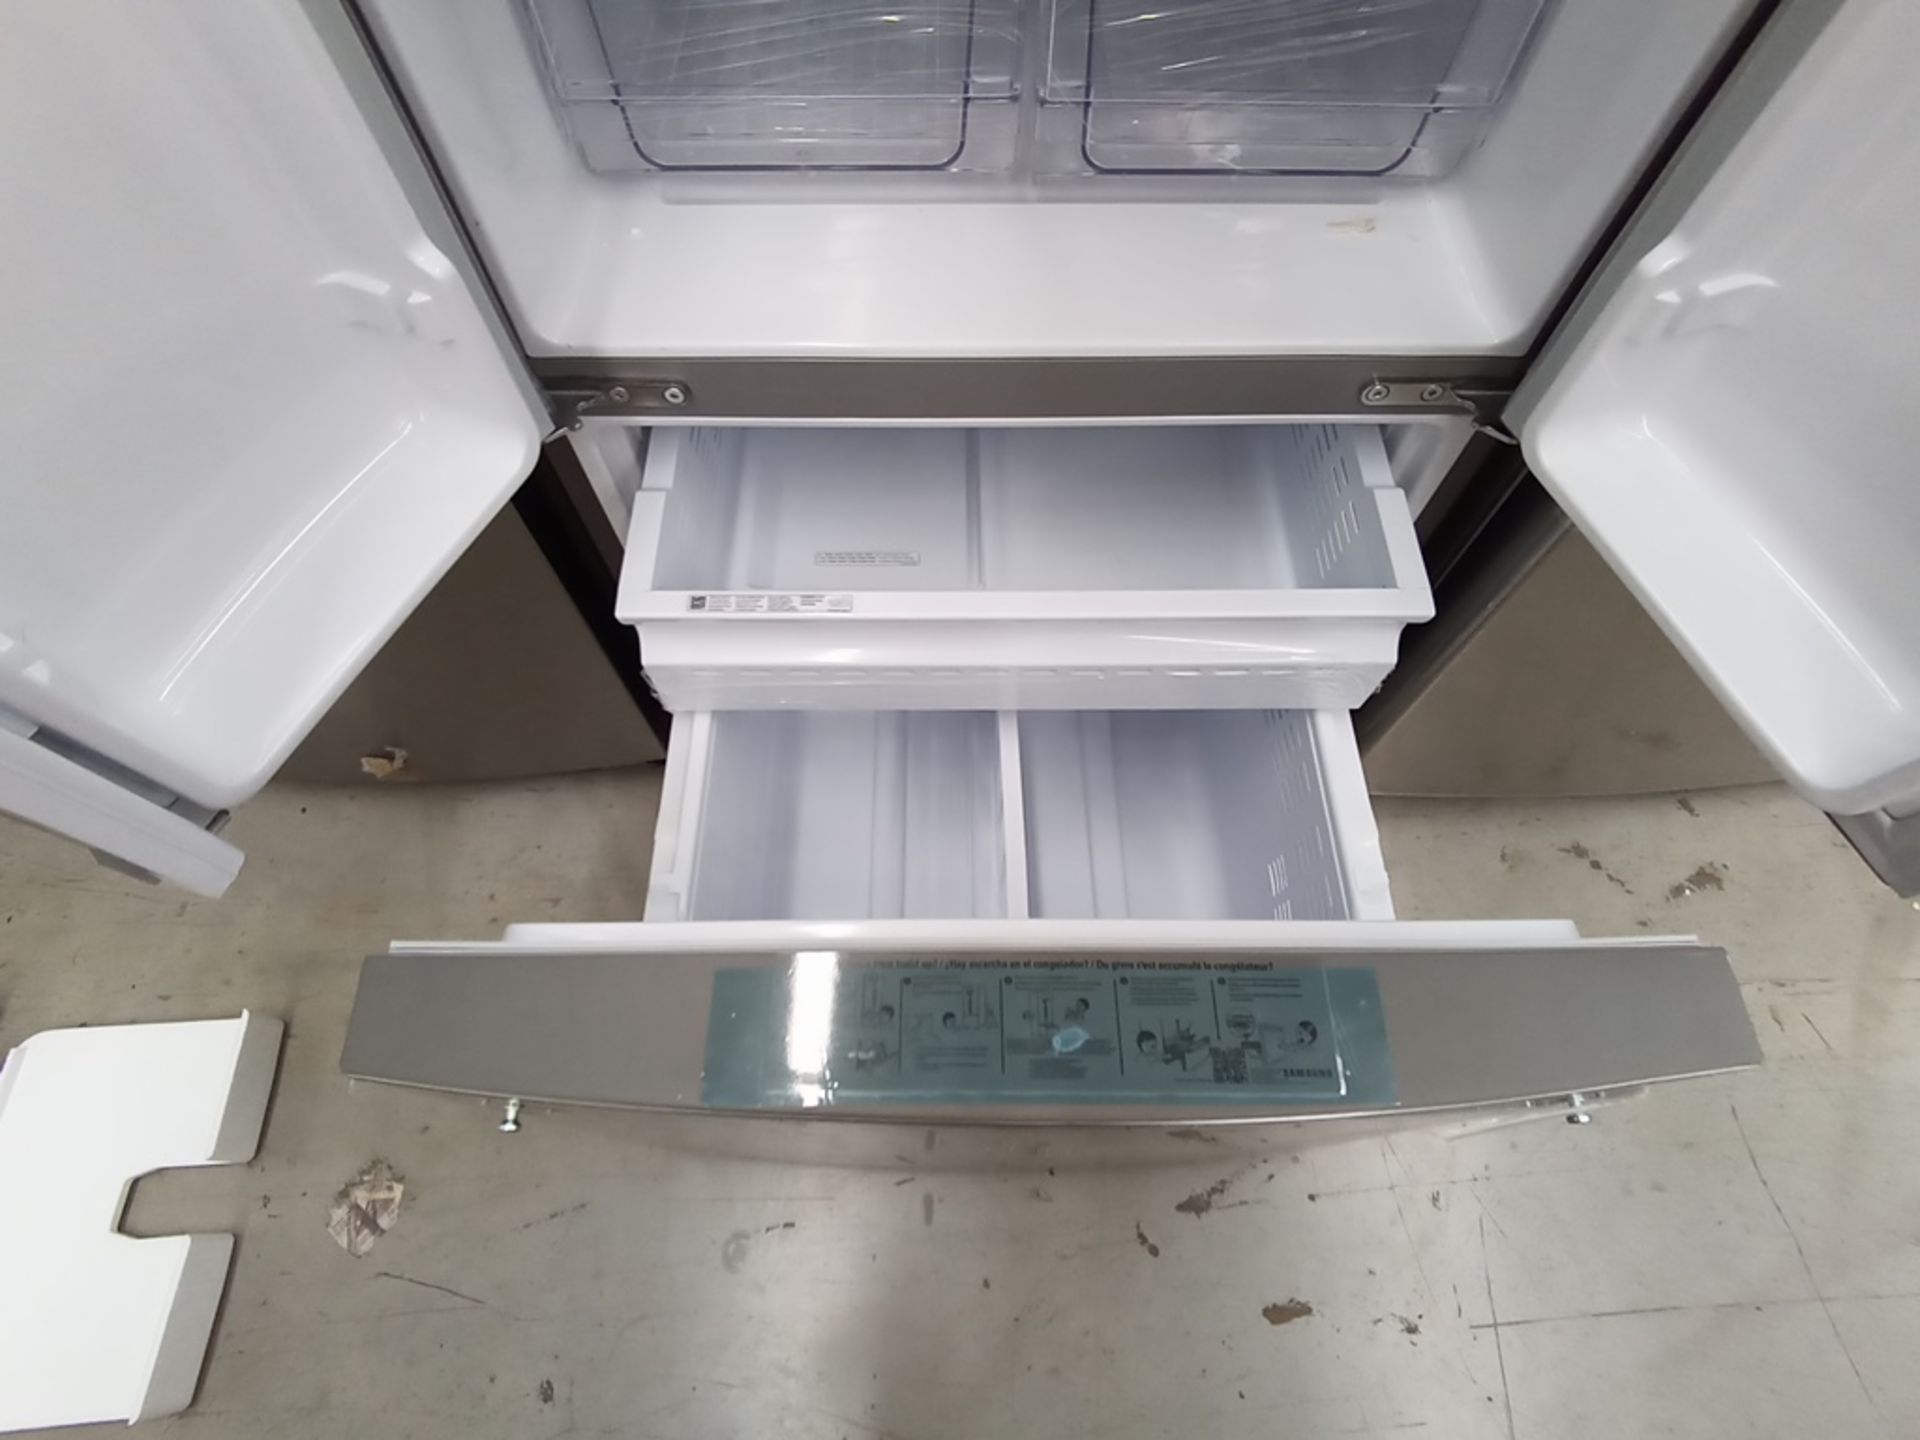 Lote de 2 refrigeradores contiene: 1 Refrigerador Marca LG, Modelo GF22BGSK, Serie 107MRMD4S595, Co - Image 15 of 16